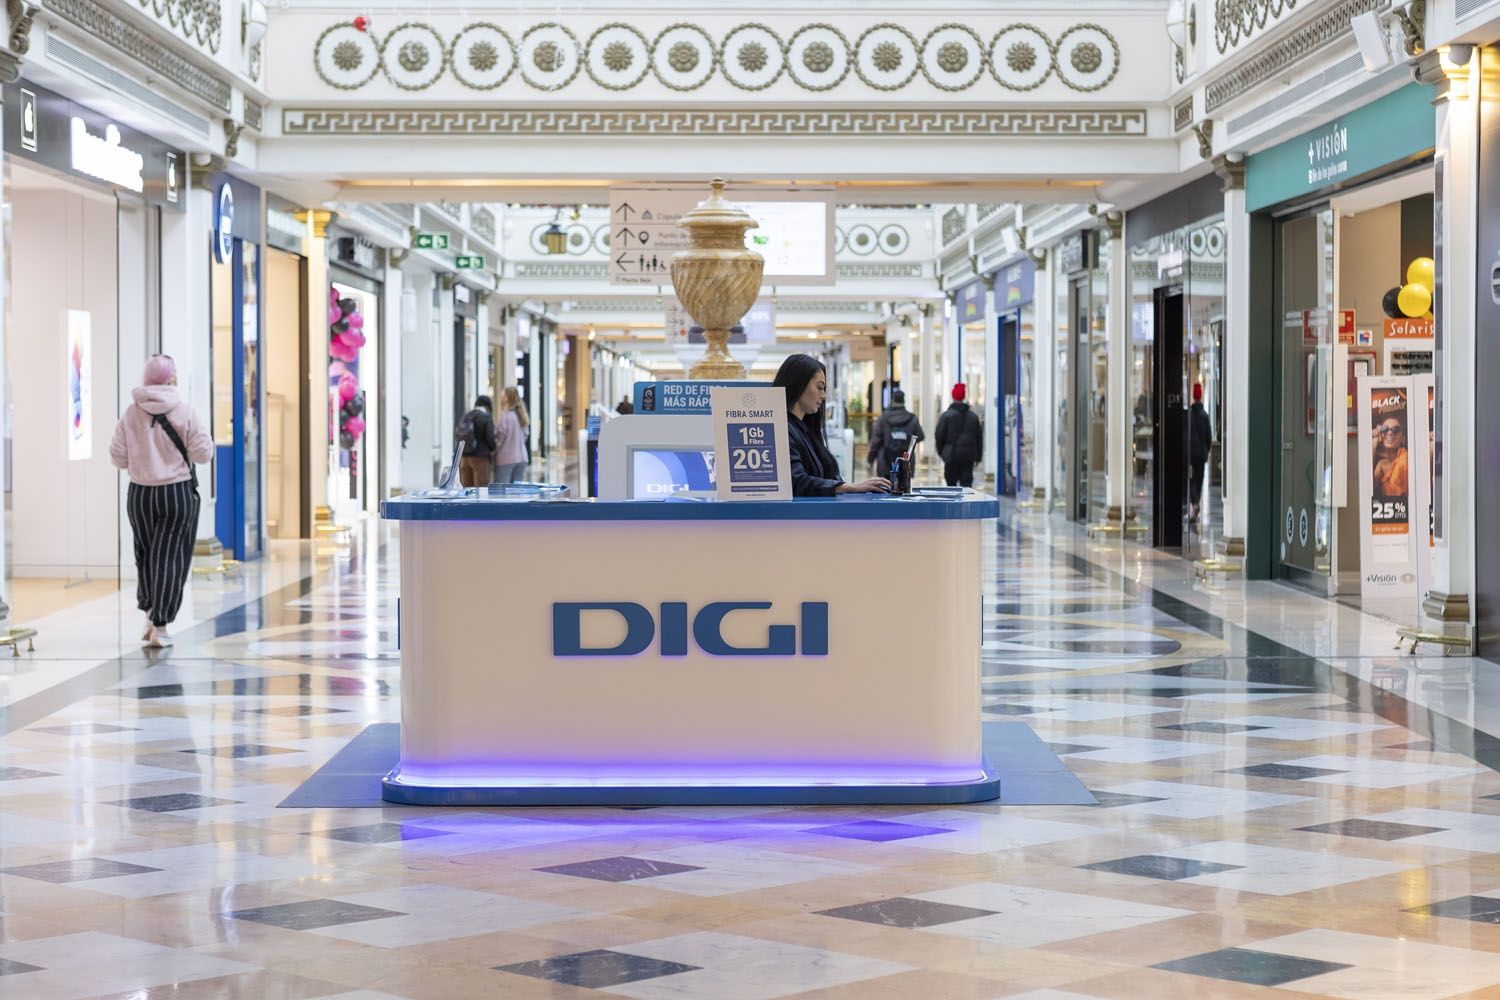 Una tienda de Digi en un centro comercial / EP